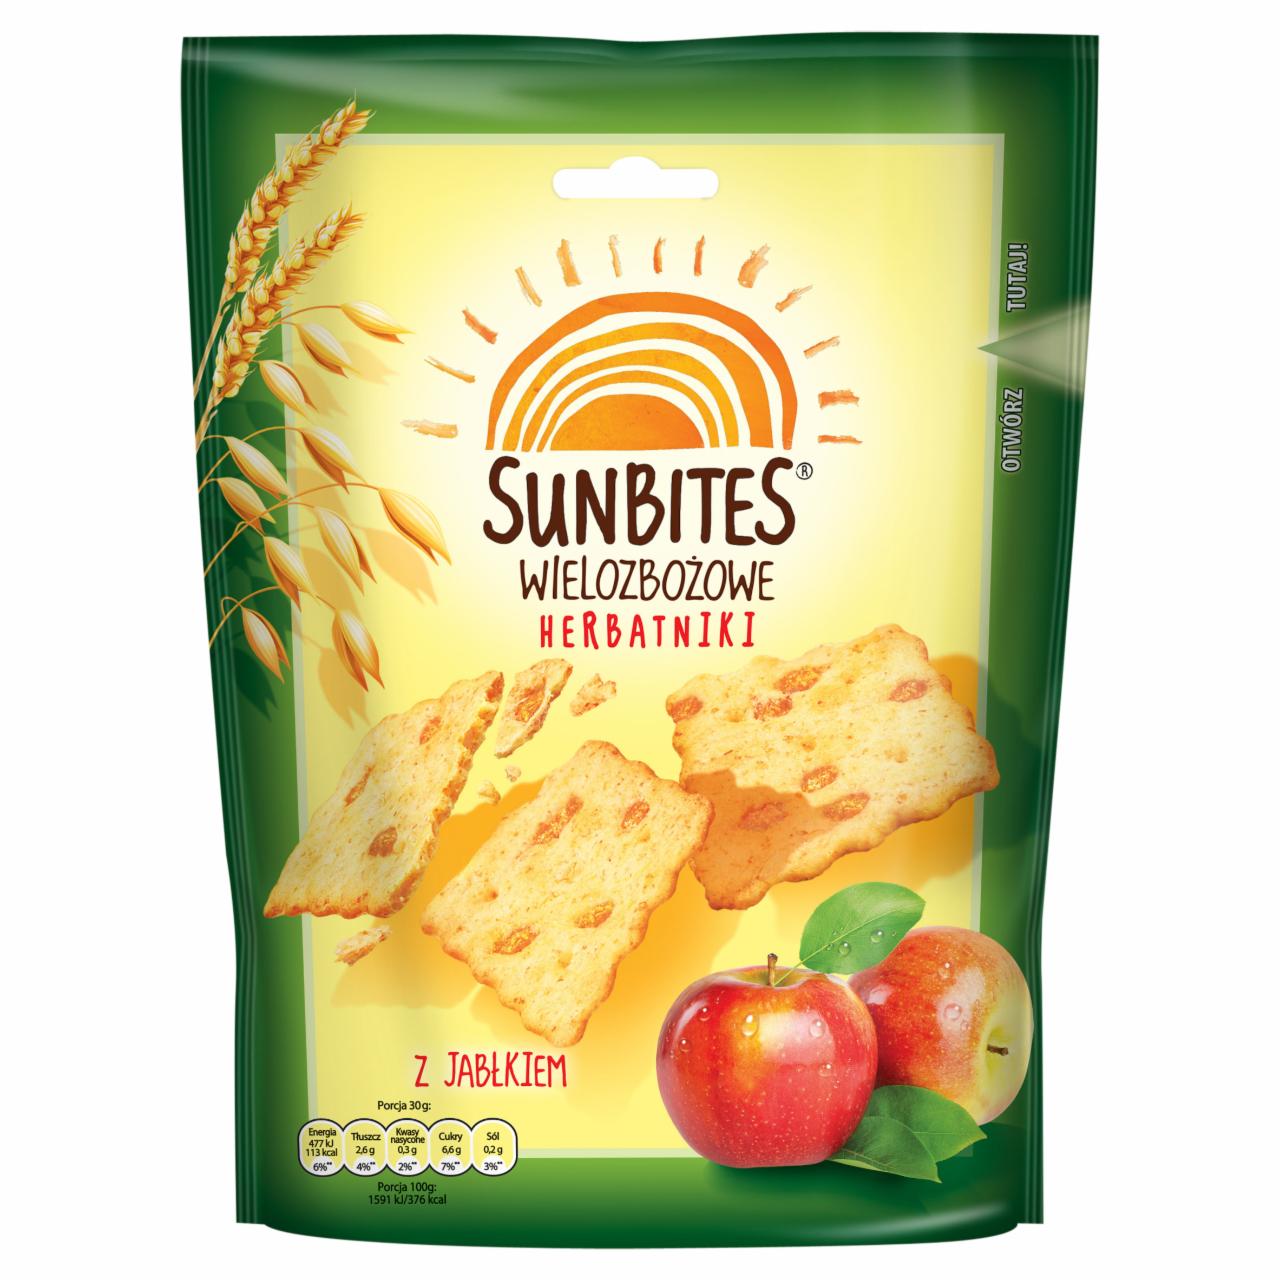 Zdjęcia - Sunbites Wielozbożowe herbatniki z jabłkiem 100 g